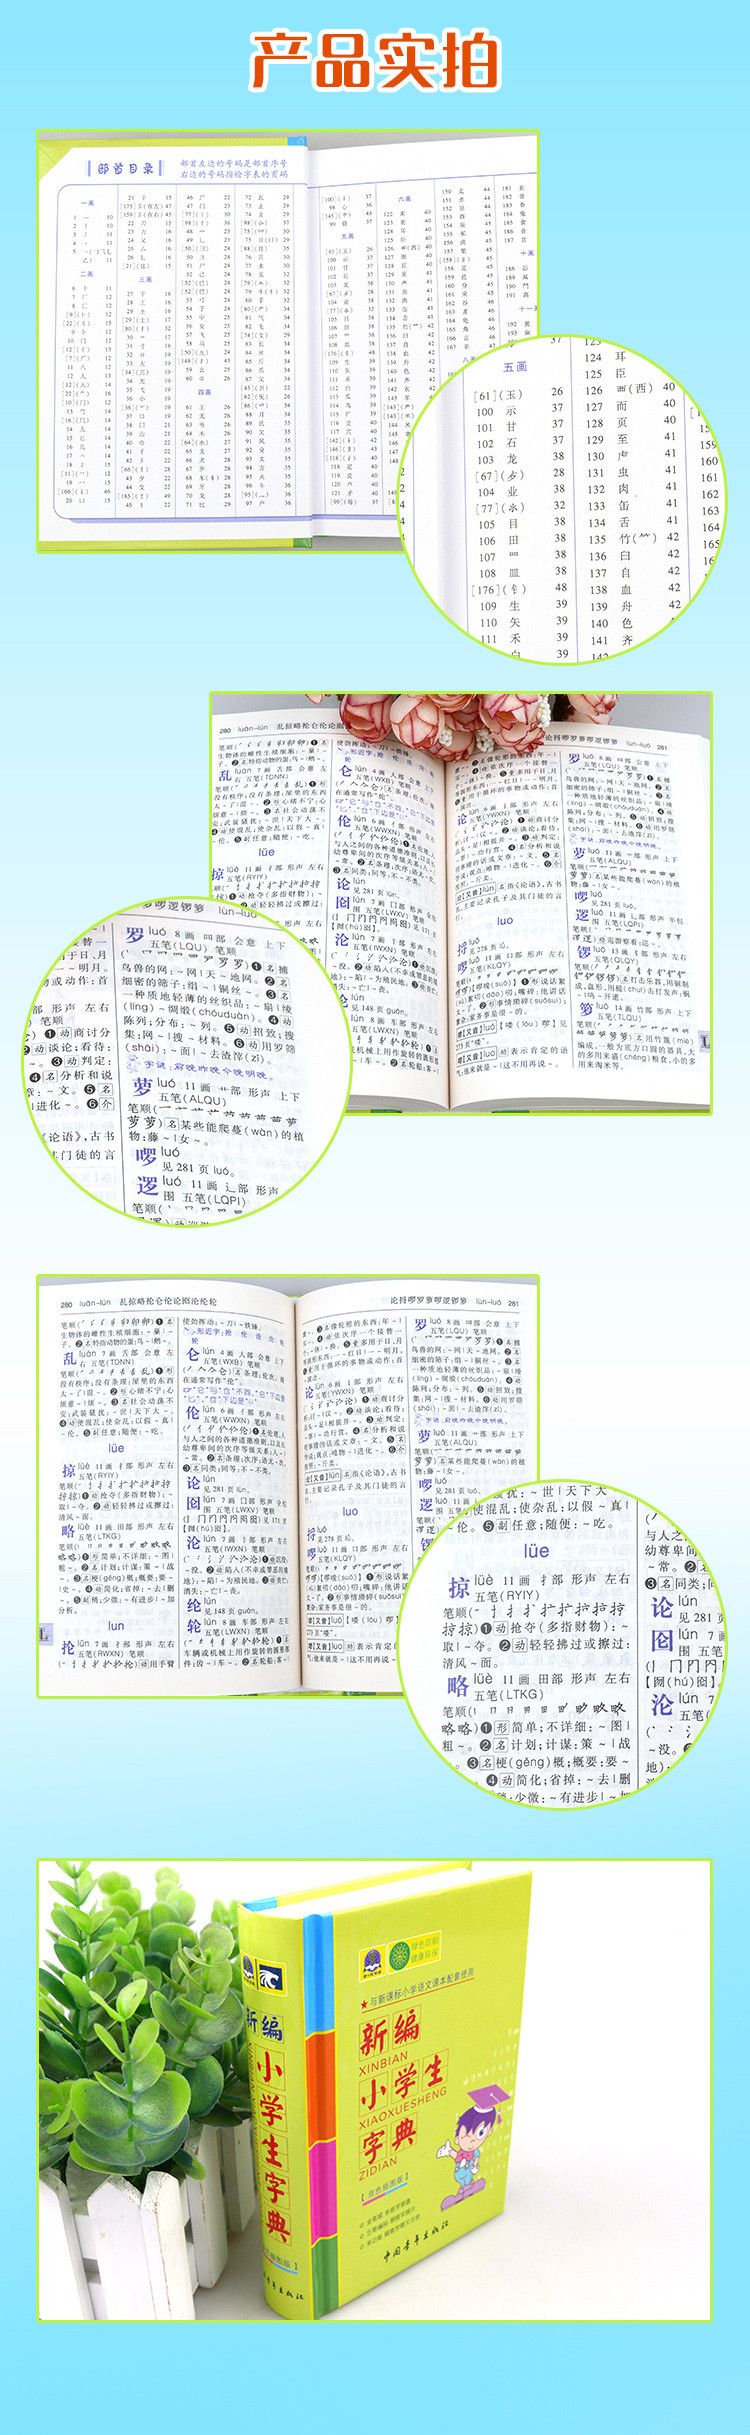 新编小学生字典 双色插图版   ISBN 978-7-5153-0616-2